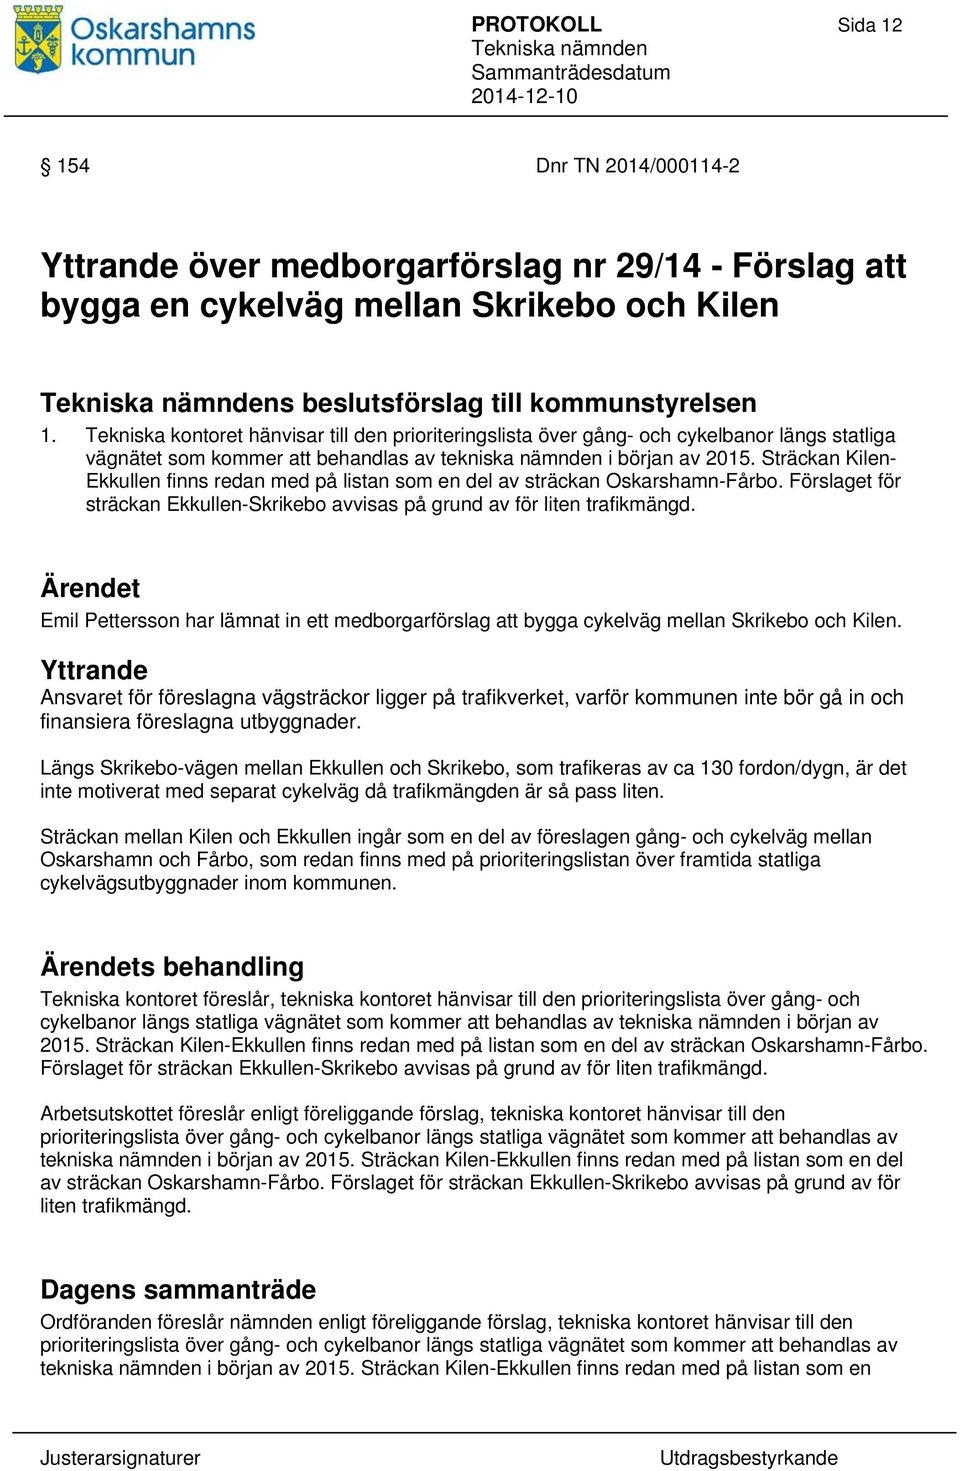 Sträckan Kilen- Ekkullen finns redan med på listan som en del av sträckan Oskarshamn-Fårbo. Förslaget för sträckan Ekkullen-Skrikebo avvisas på grund av för liten trafikmängd.